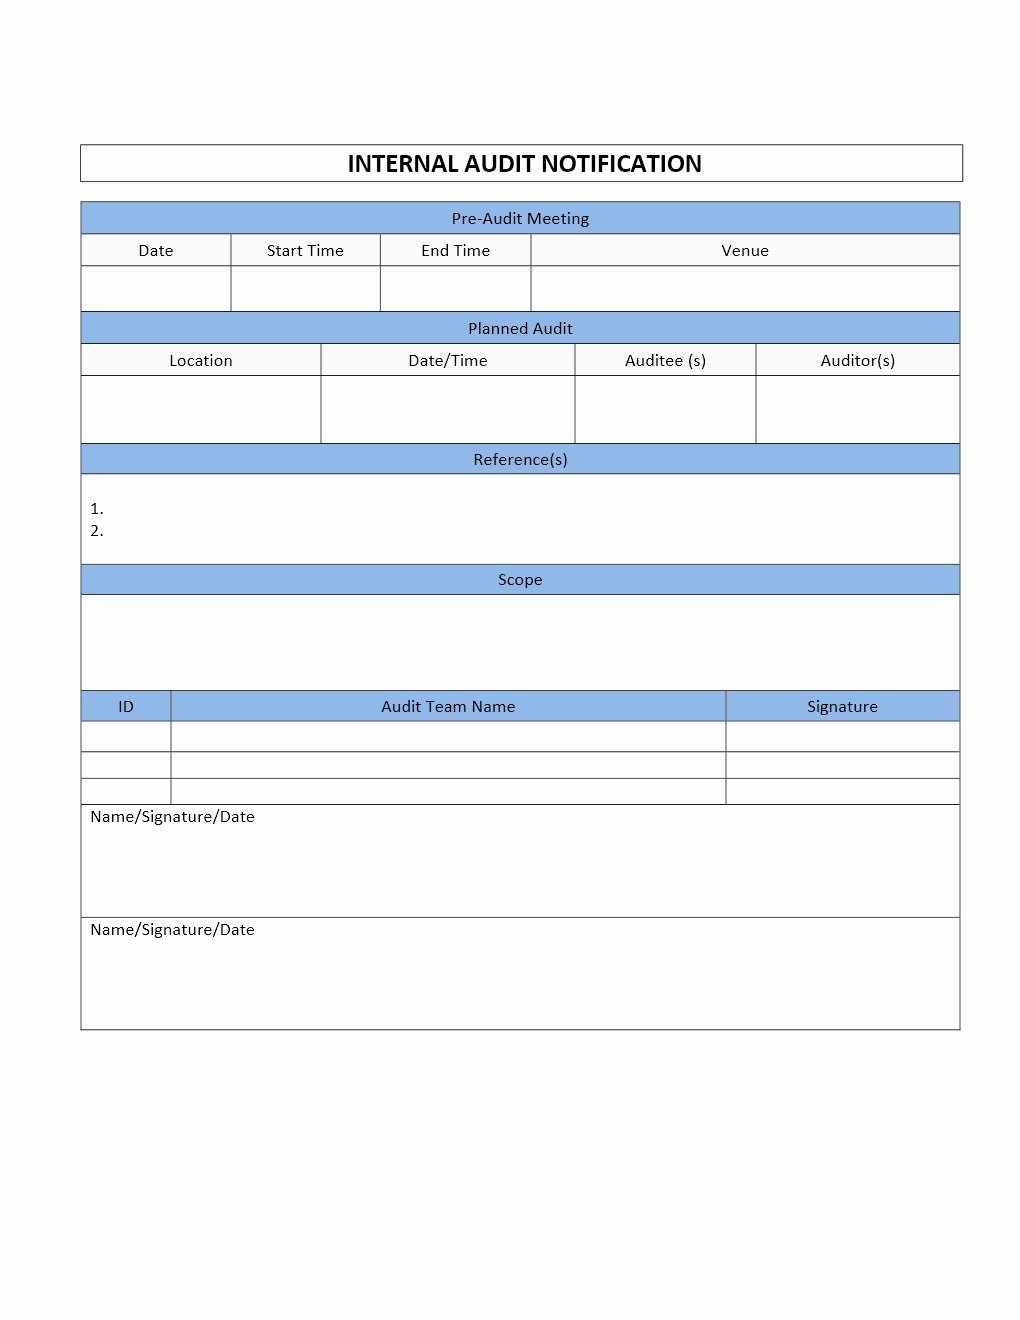 Internal Audit Report Template New Internal Audit Notification